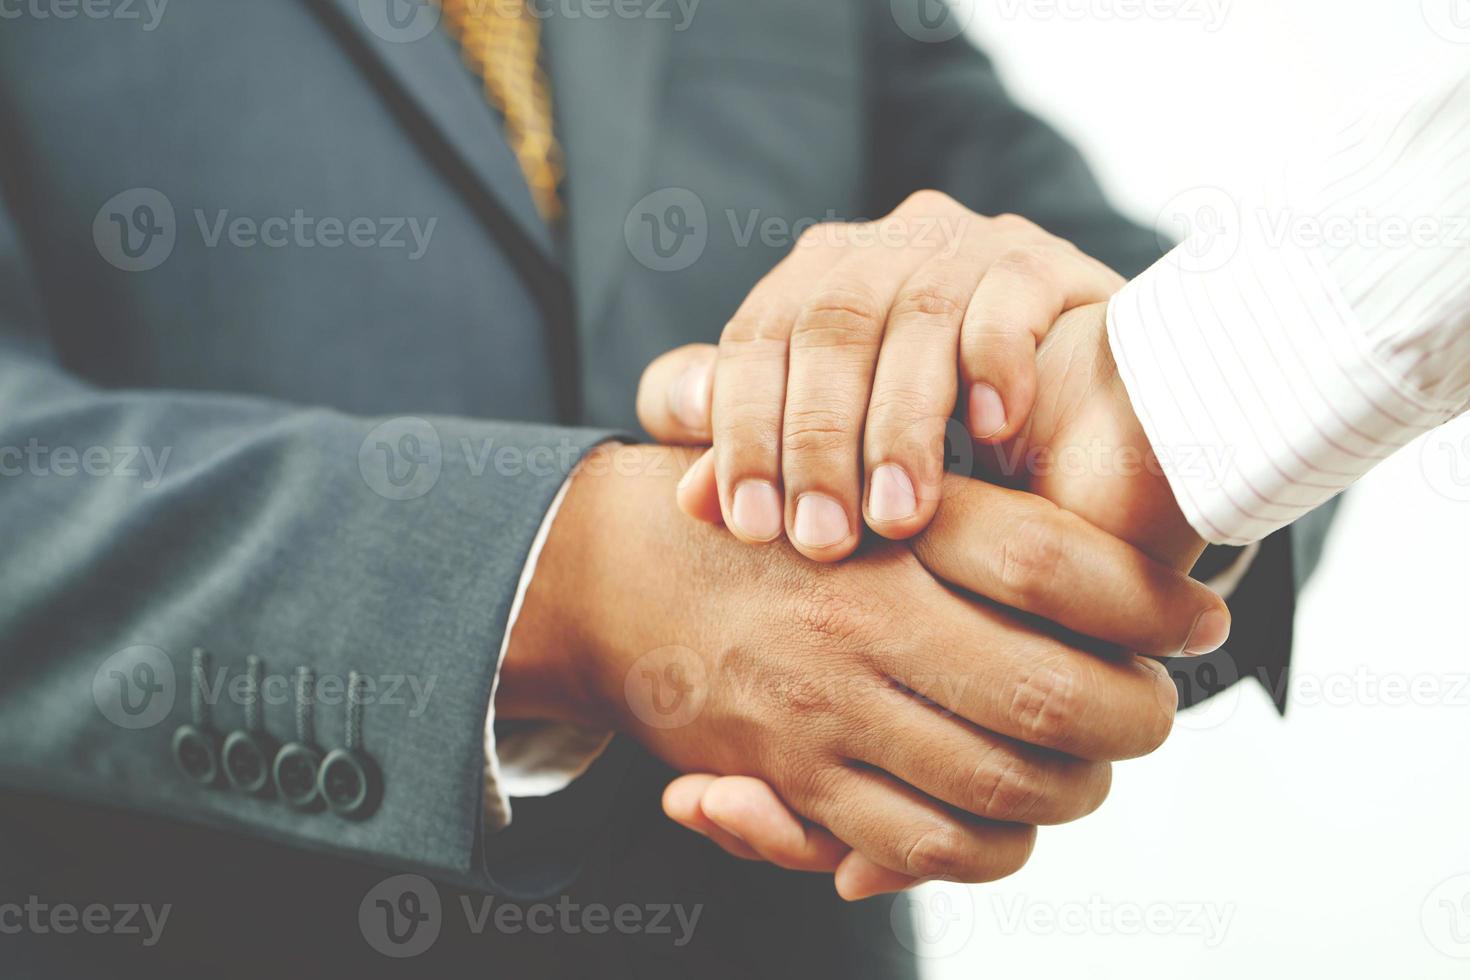 Nahaufnahme eines Business-Handshake zwischen zwei Kollegen kariertes Hemd foto